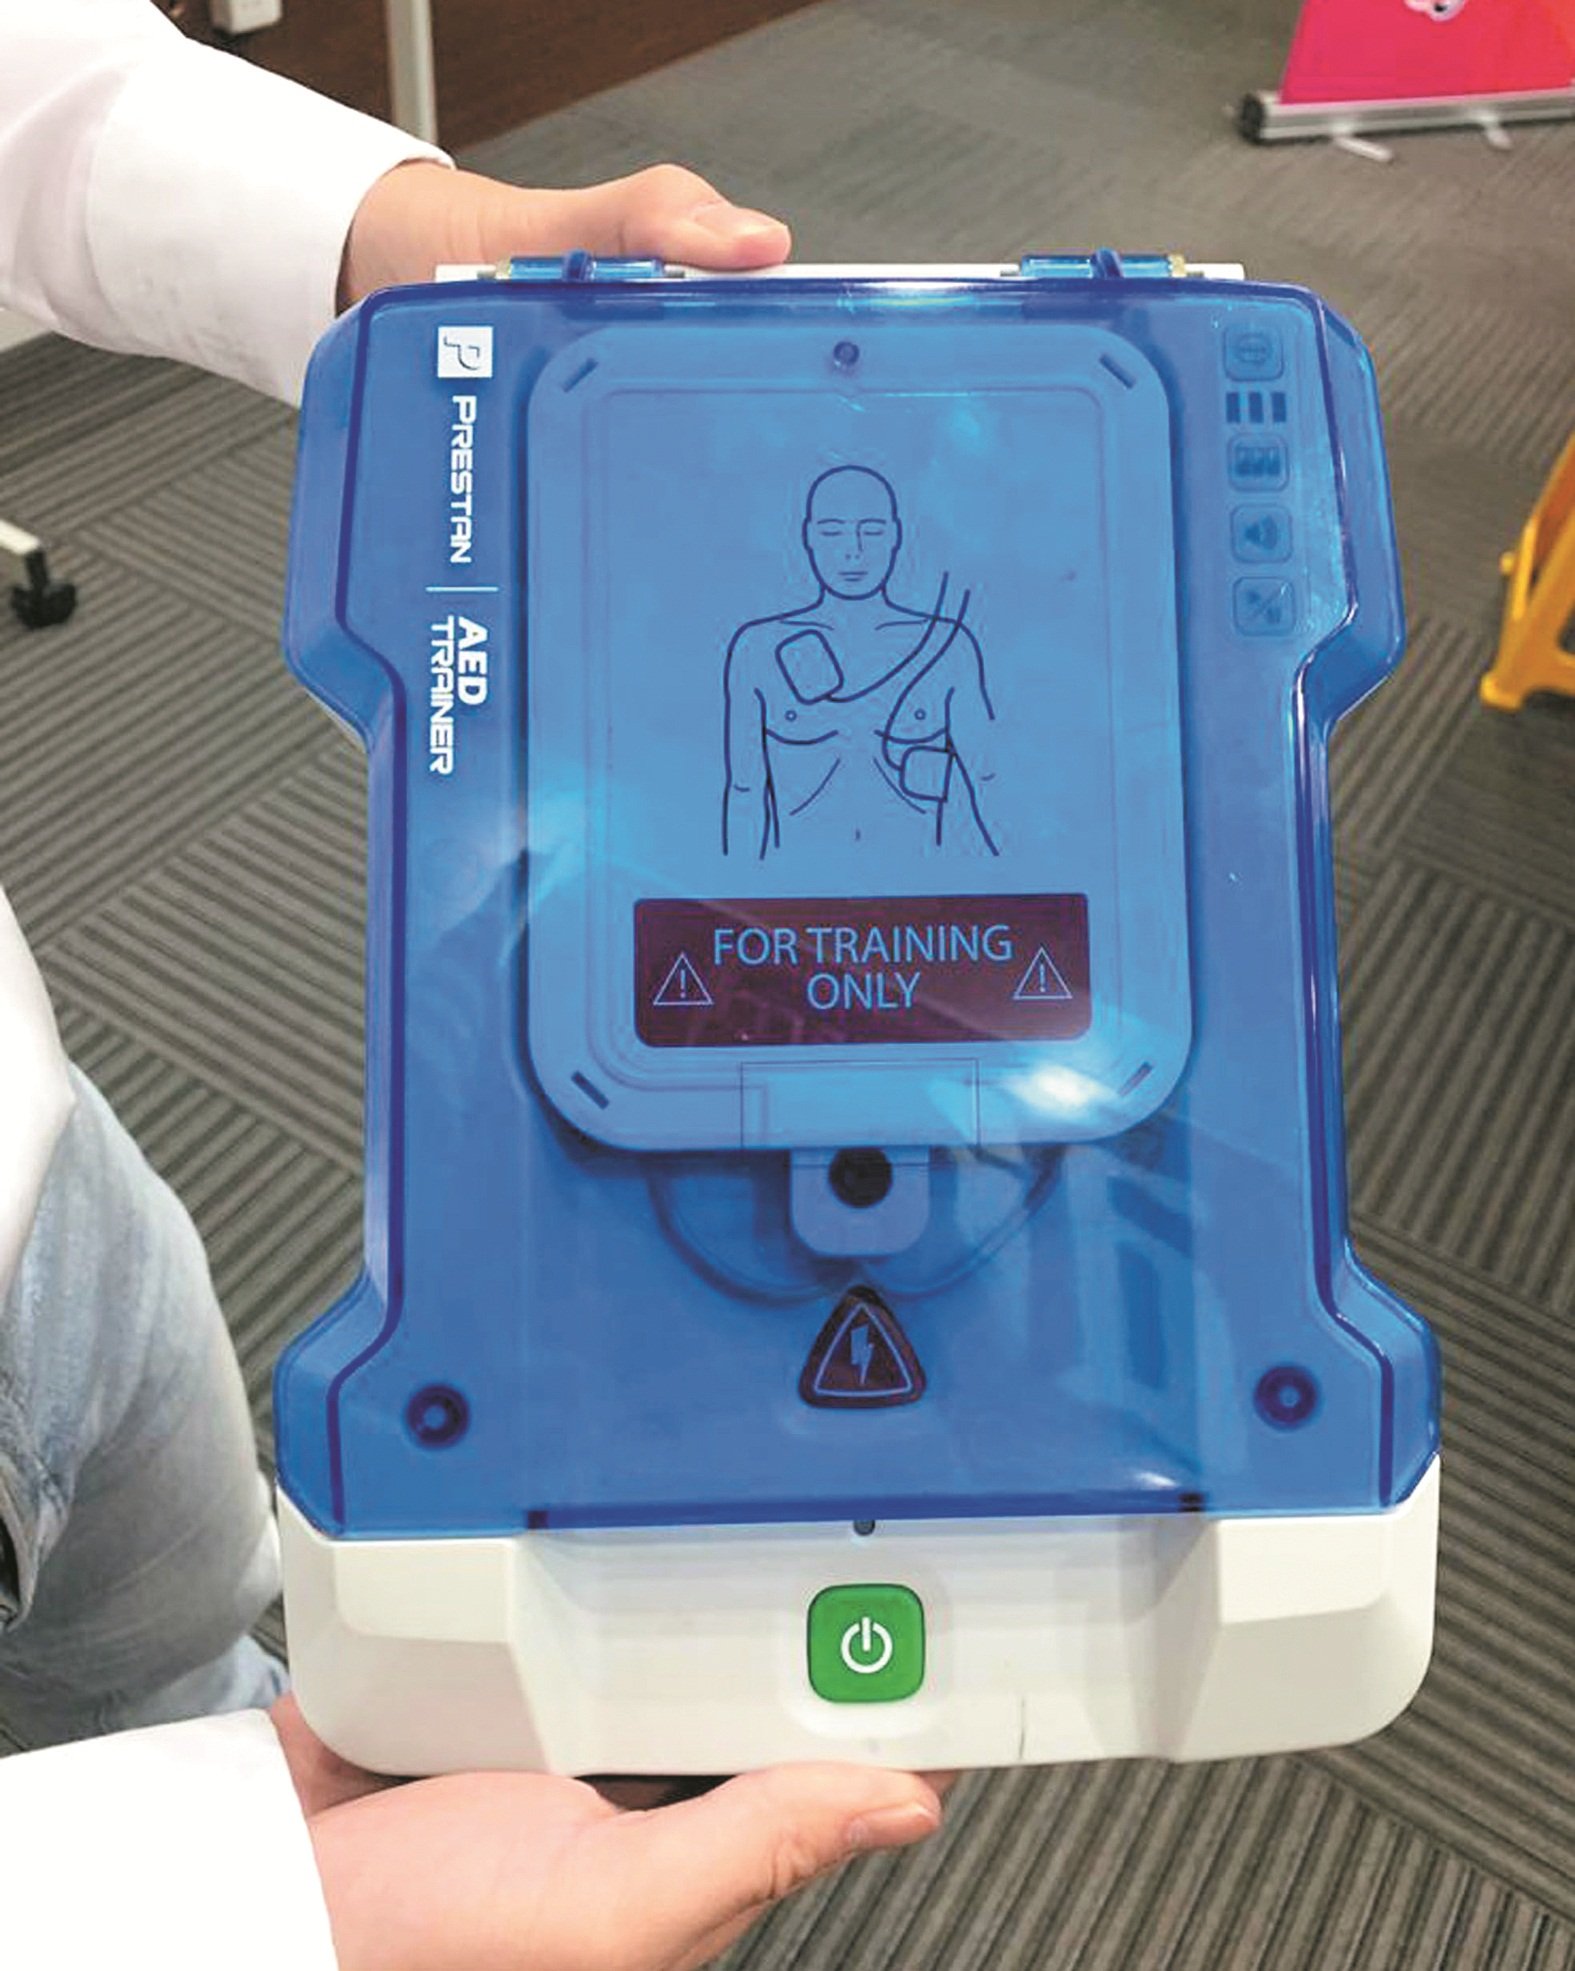 国内各大公共场所大多备有心脏除颤器（AED），即使是没有任何急救知识者，也可以依照机器所给予的指示为伤者提供援助。